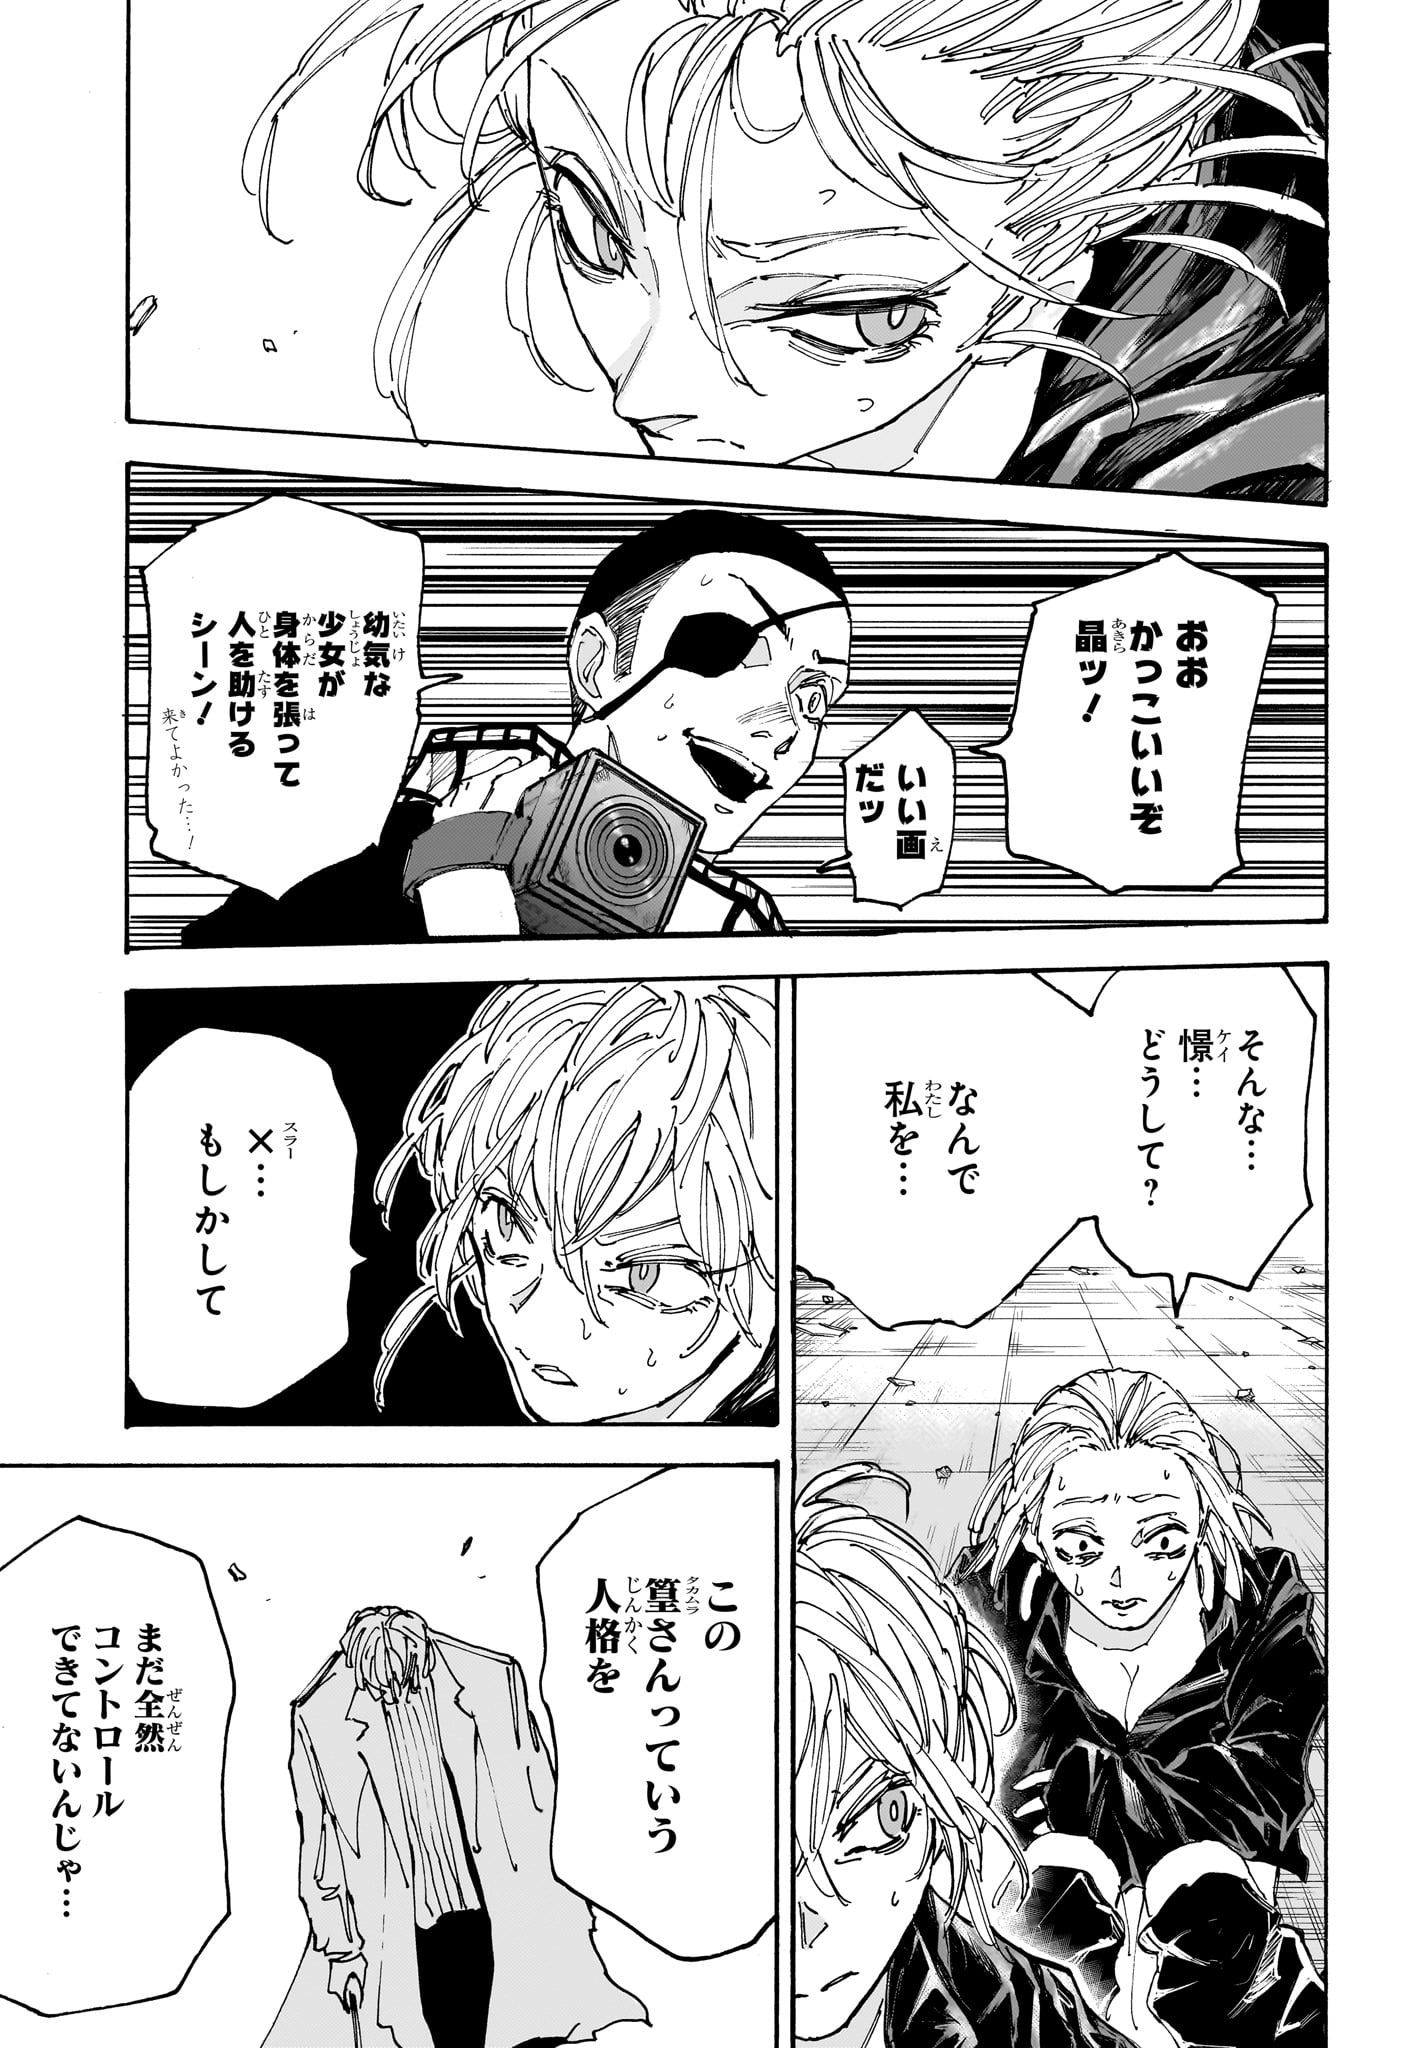 Sakamoto Days - Chapter 172 - Page 9